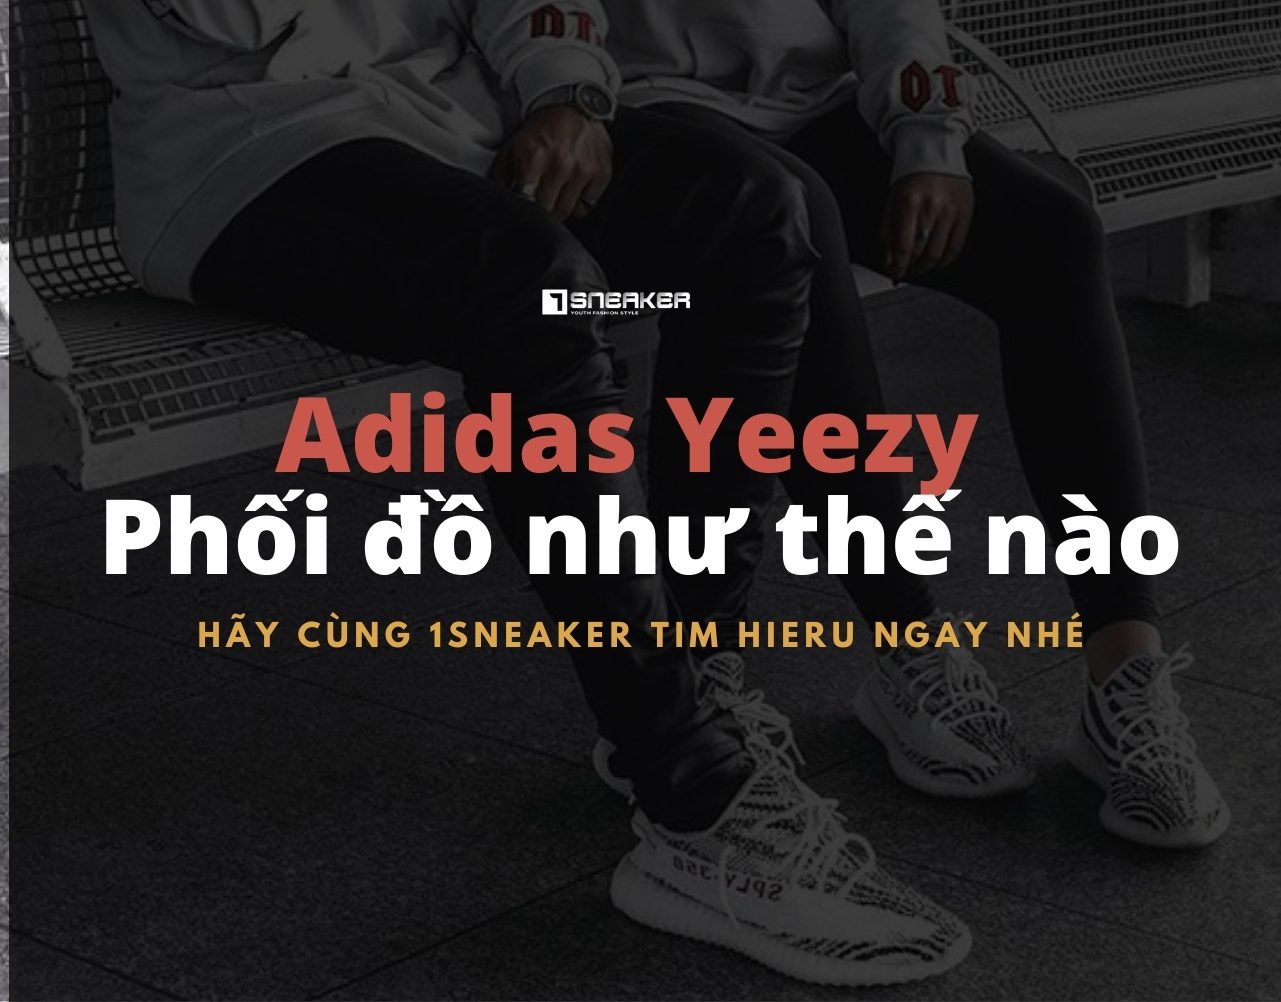 cach len do cho Adidas Yeezy